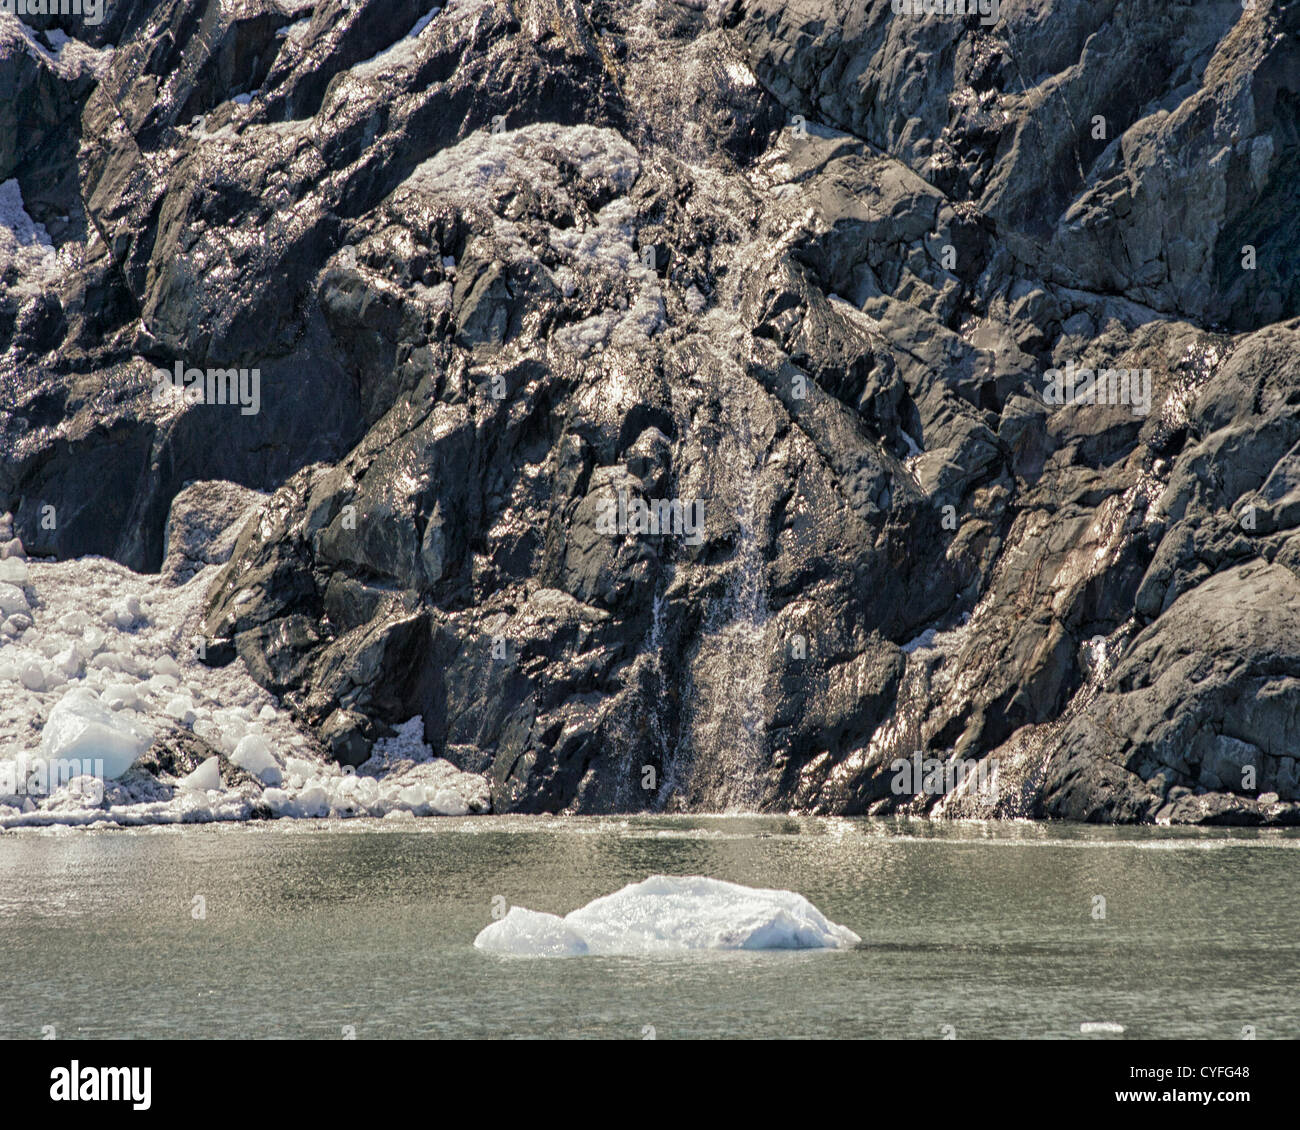 Junio 29, 2012 - Península Kenai, Alaska, EE.UU. - Una cascada fluye hacia abajo por las montañas Chugach Portage, donde un lago glacial iceberg flotantes. En la Península Kenai en el Bosque Nacional de Chugach, Portage Lake y su glaciar es la atracción turística más visitada en Alaska. (Crédito de la Imagen: © Arnold Drapkin/ZUMAPRESS.com) Foto de stock